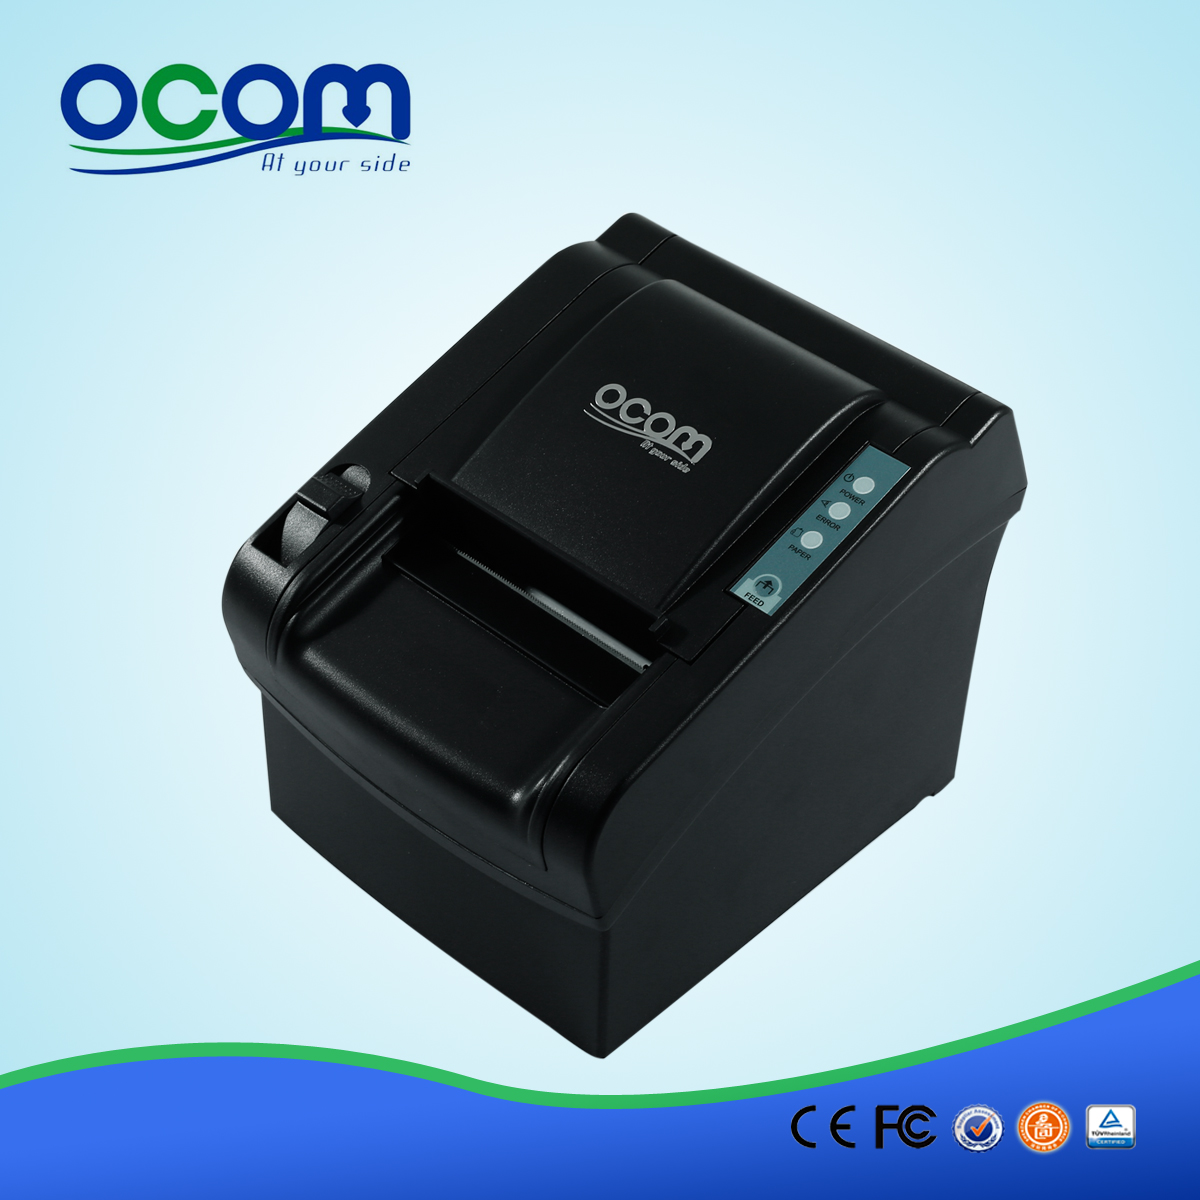 OCPP-802: 80 milímetros de alta qualidade cabeça impressora térmica, impressora térmica pos barato